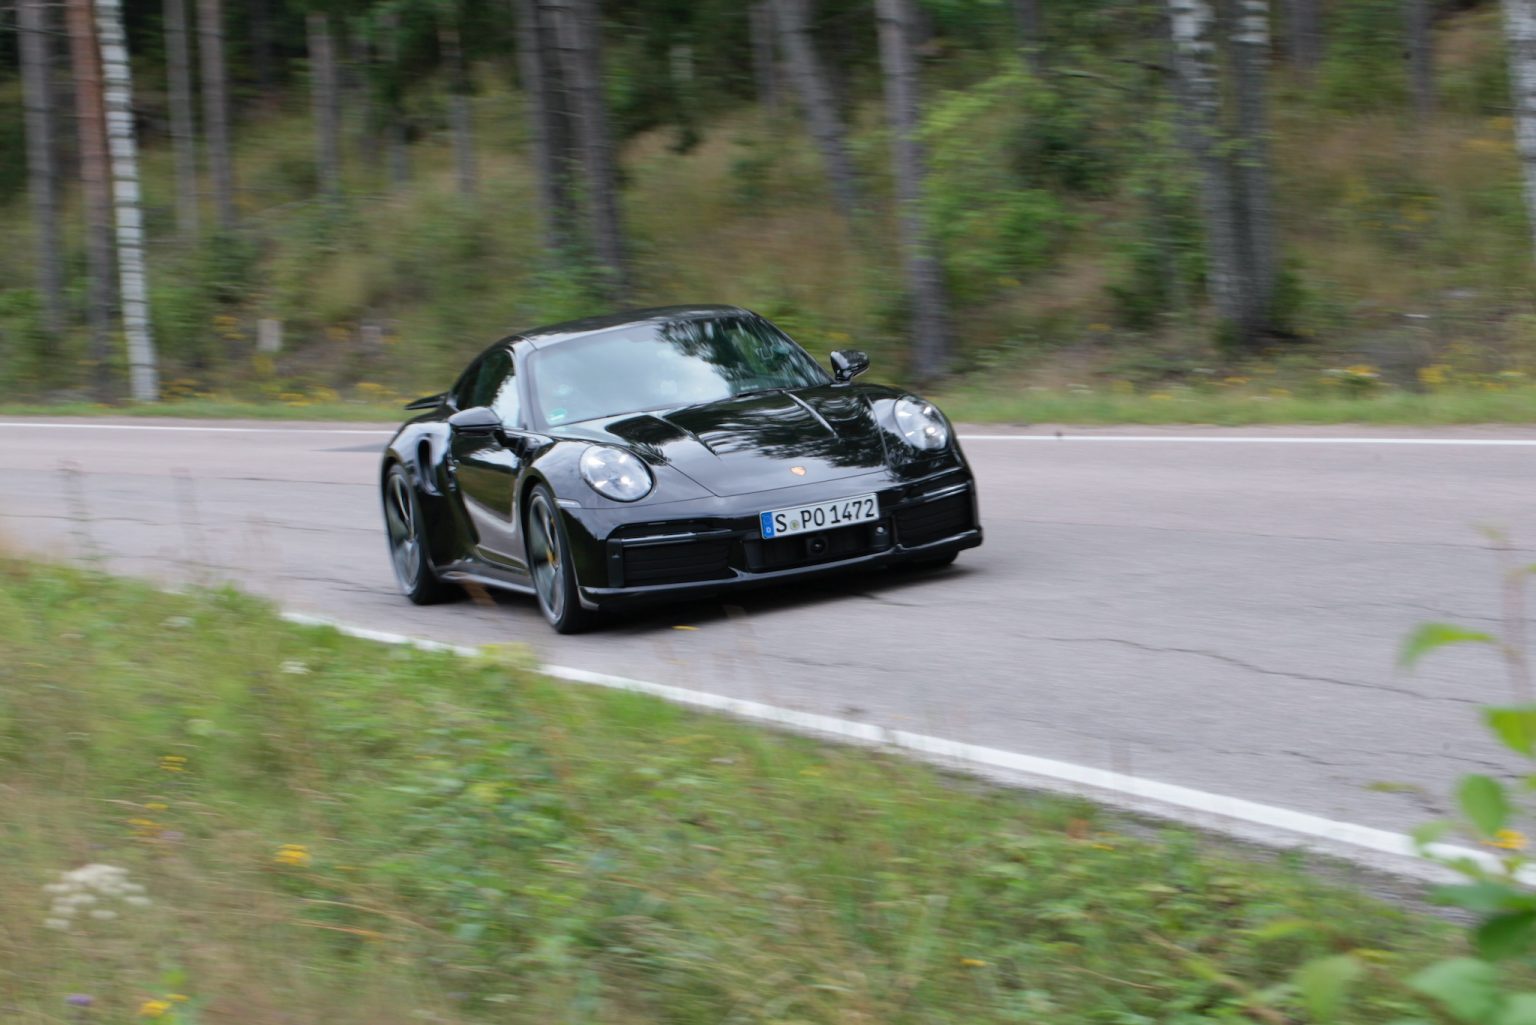 Koeajossa Porsche 911 Turbo S hurjaa suorituskykyä ja